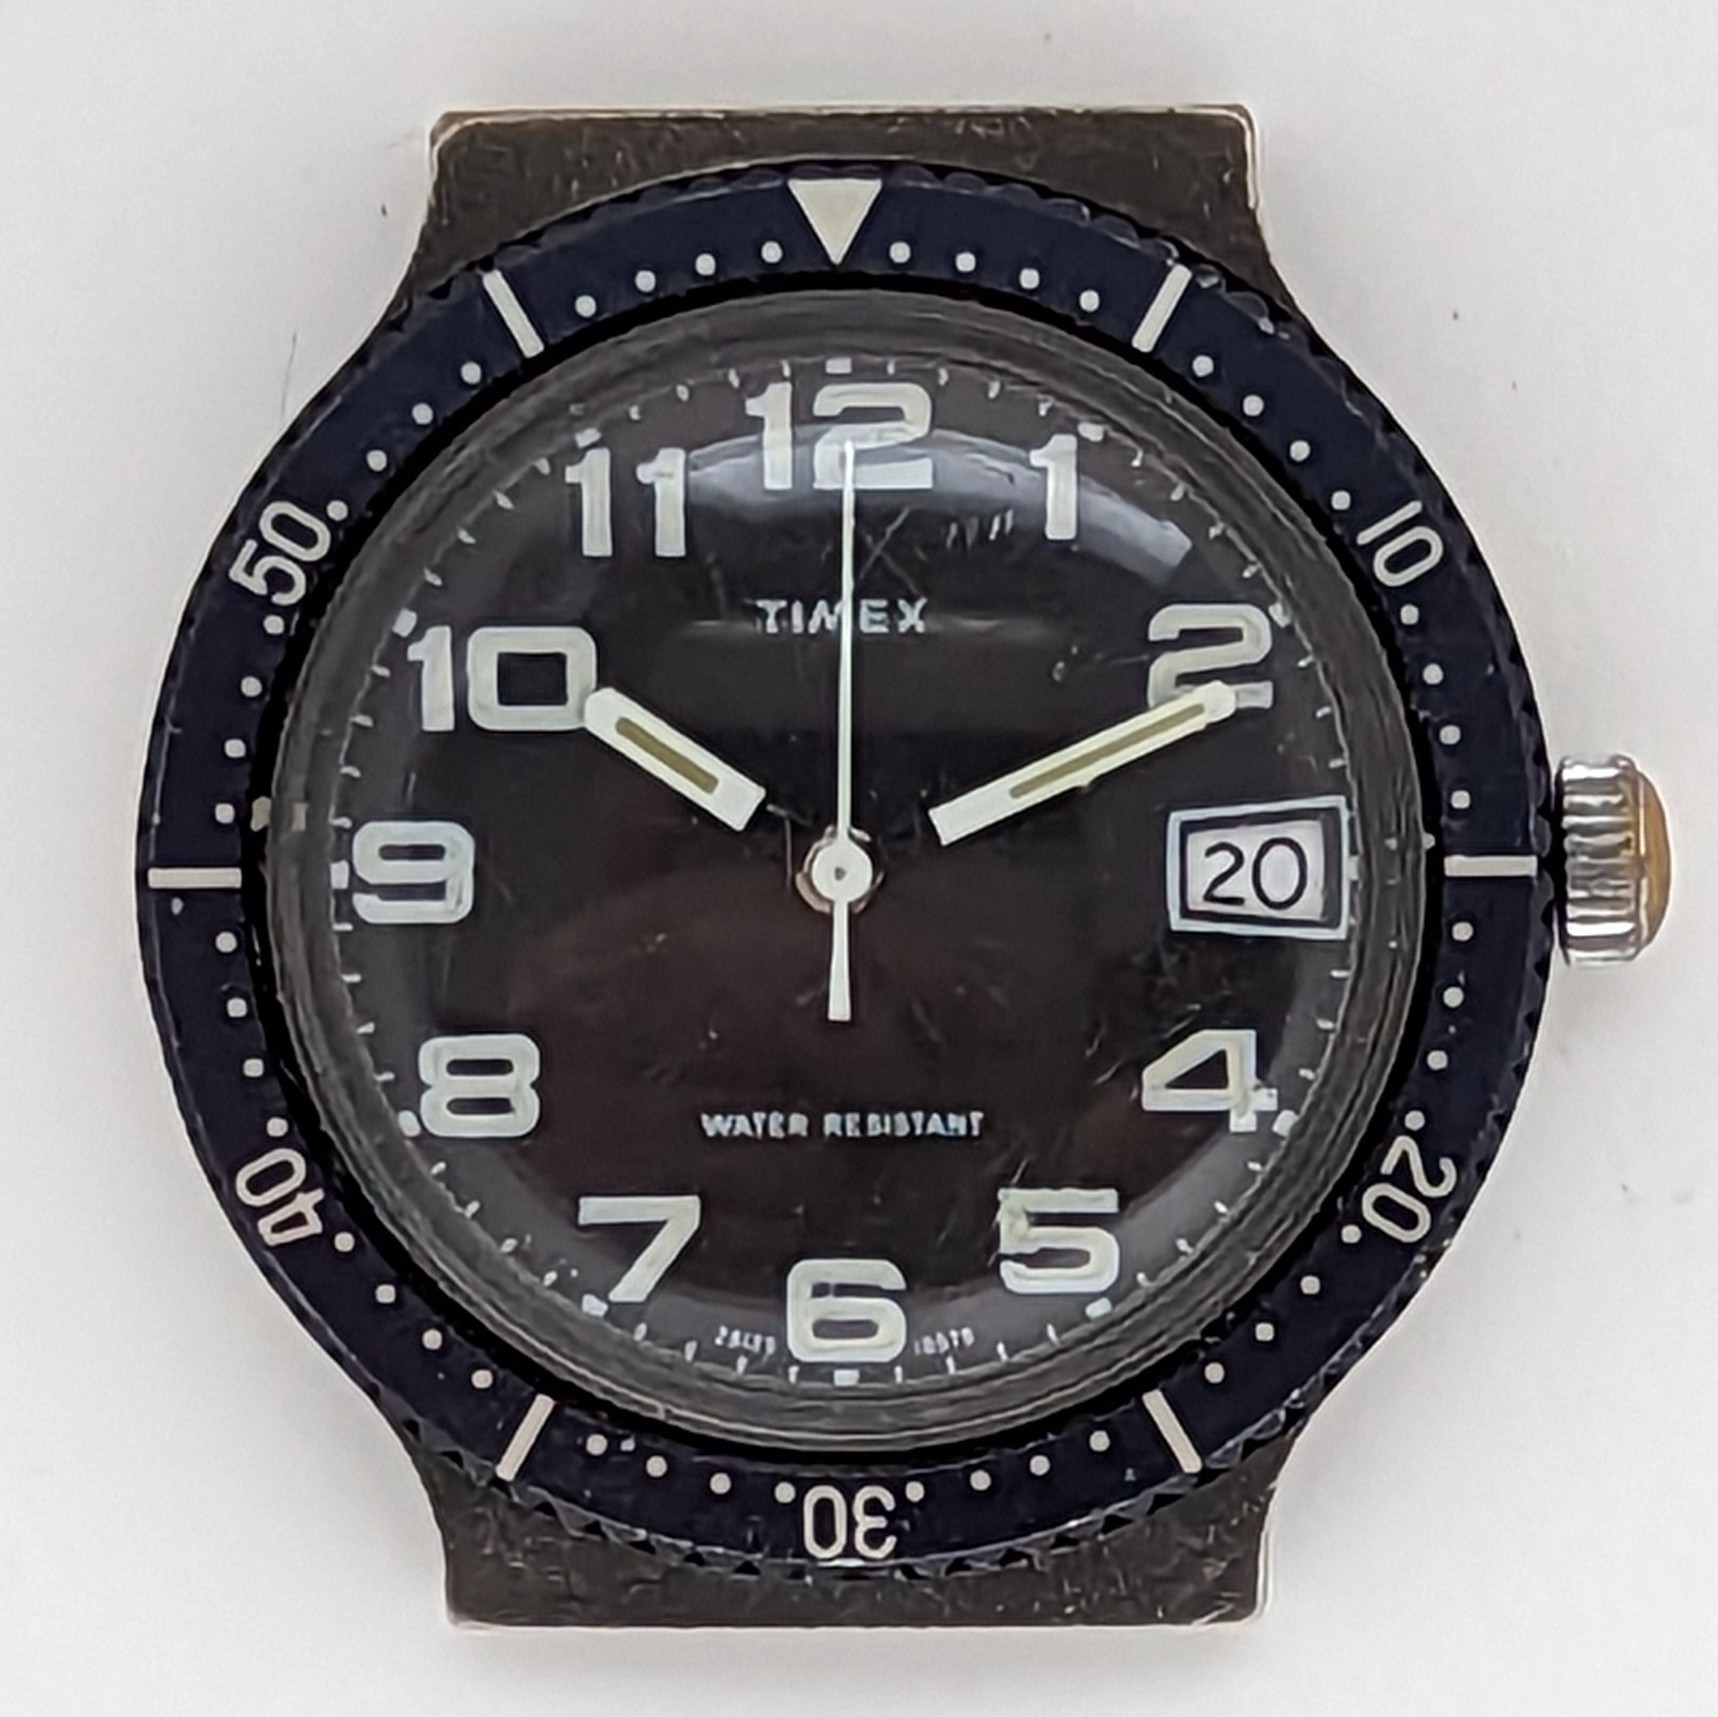 Timex Marlin 28129 10579 [1979] Dive Watch